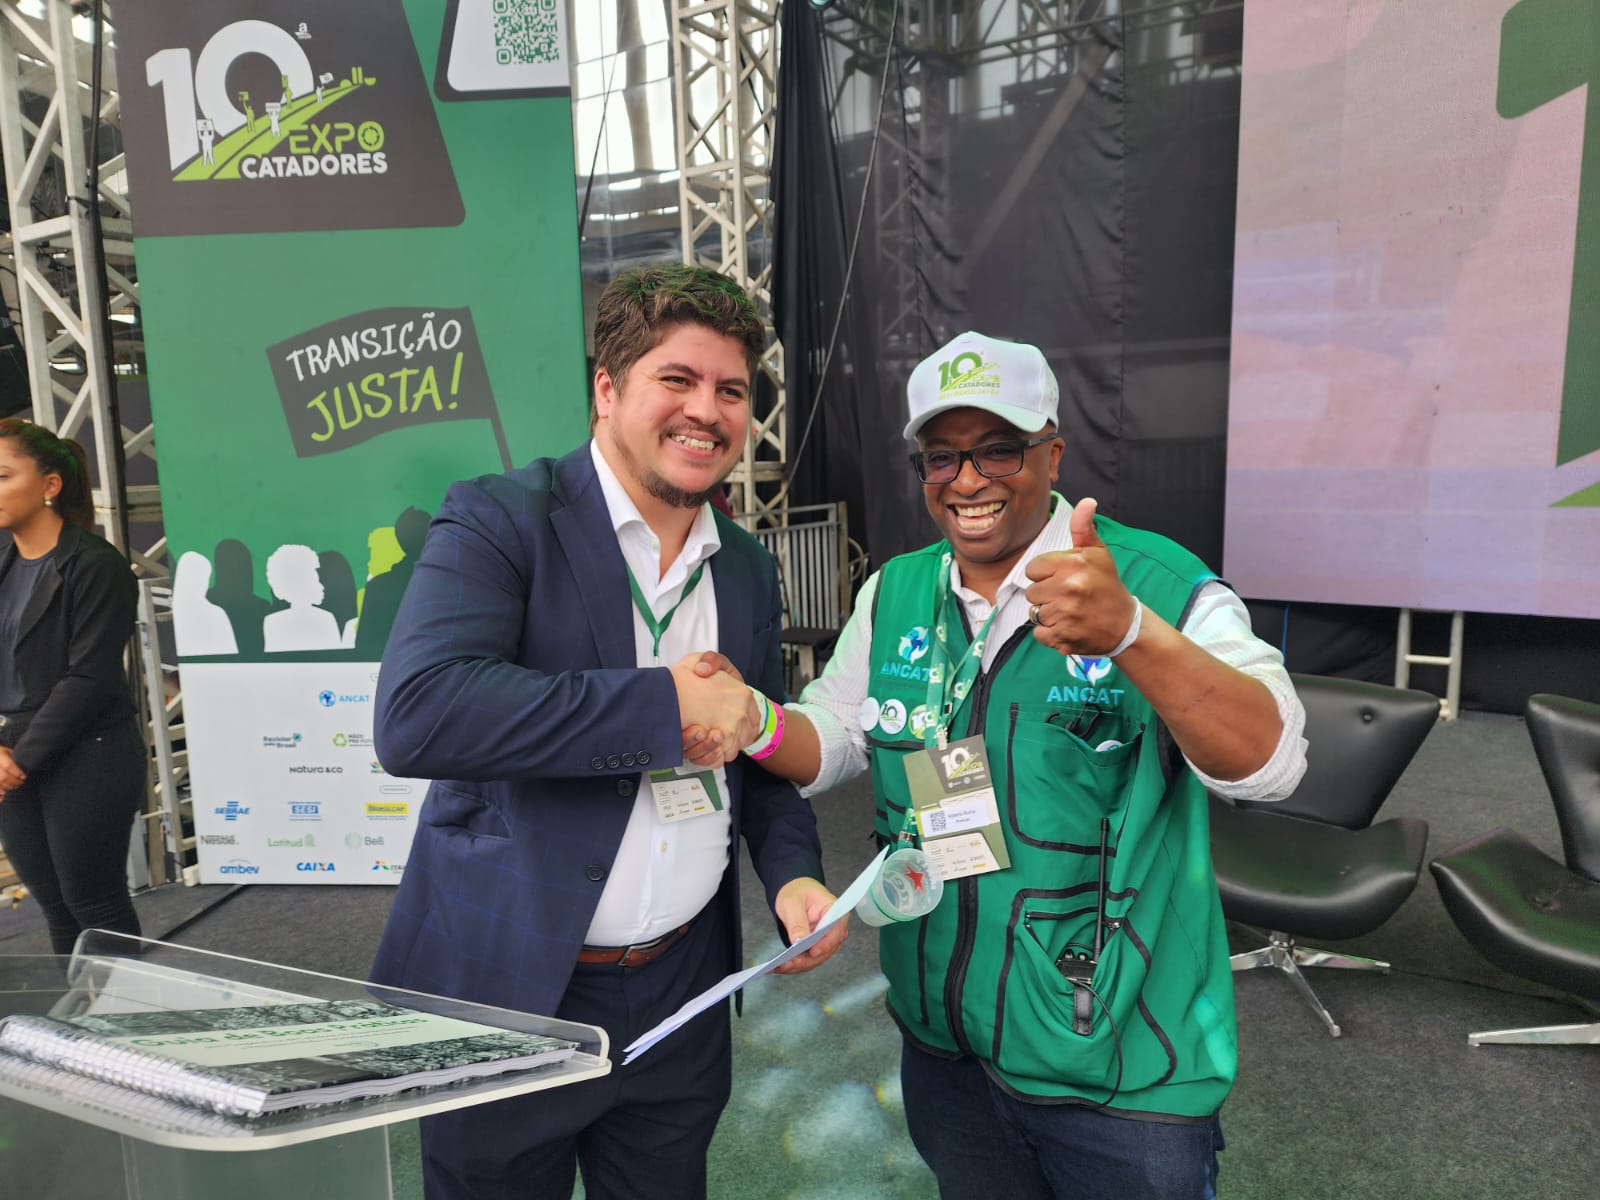 Recicla Latas e Associação Nacional dos Catadores firmam acordo para impulsionar a economia circular e inclusão social